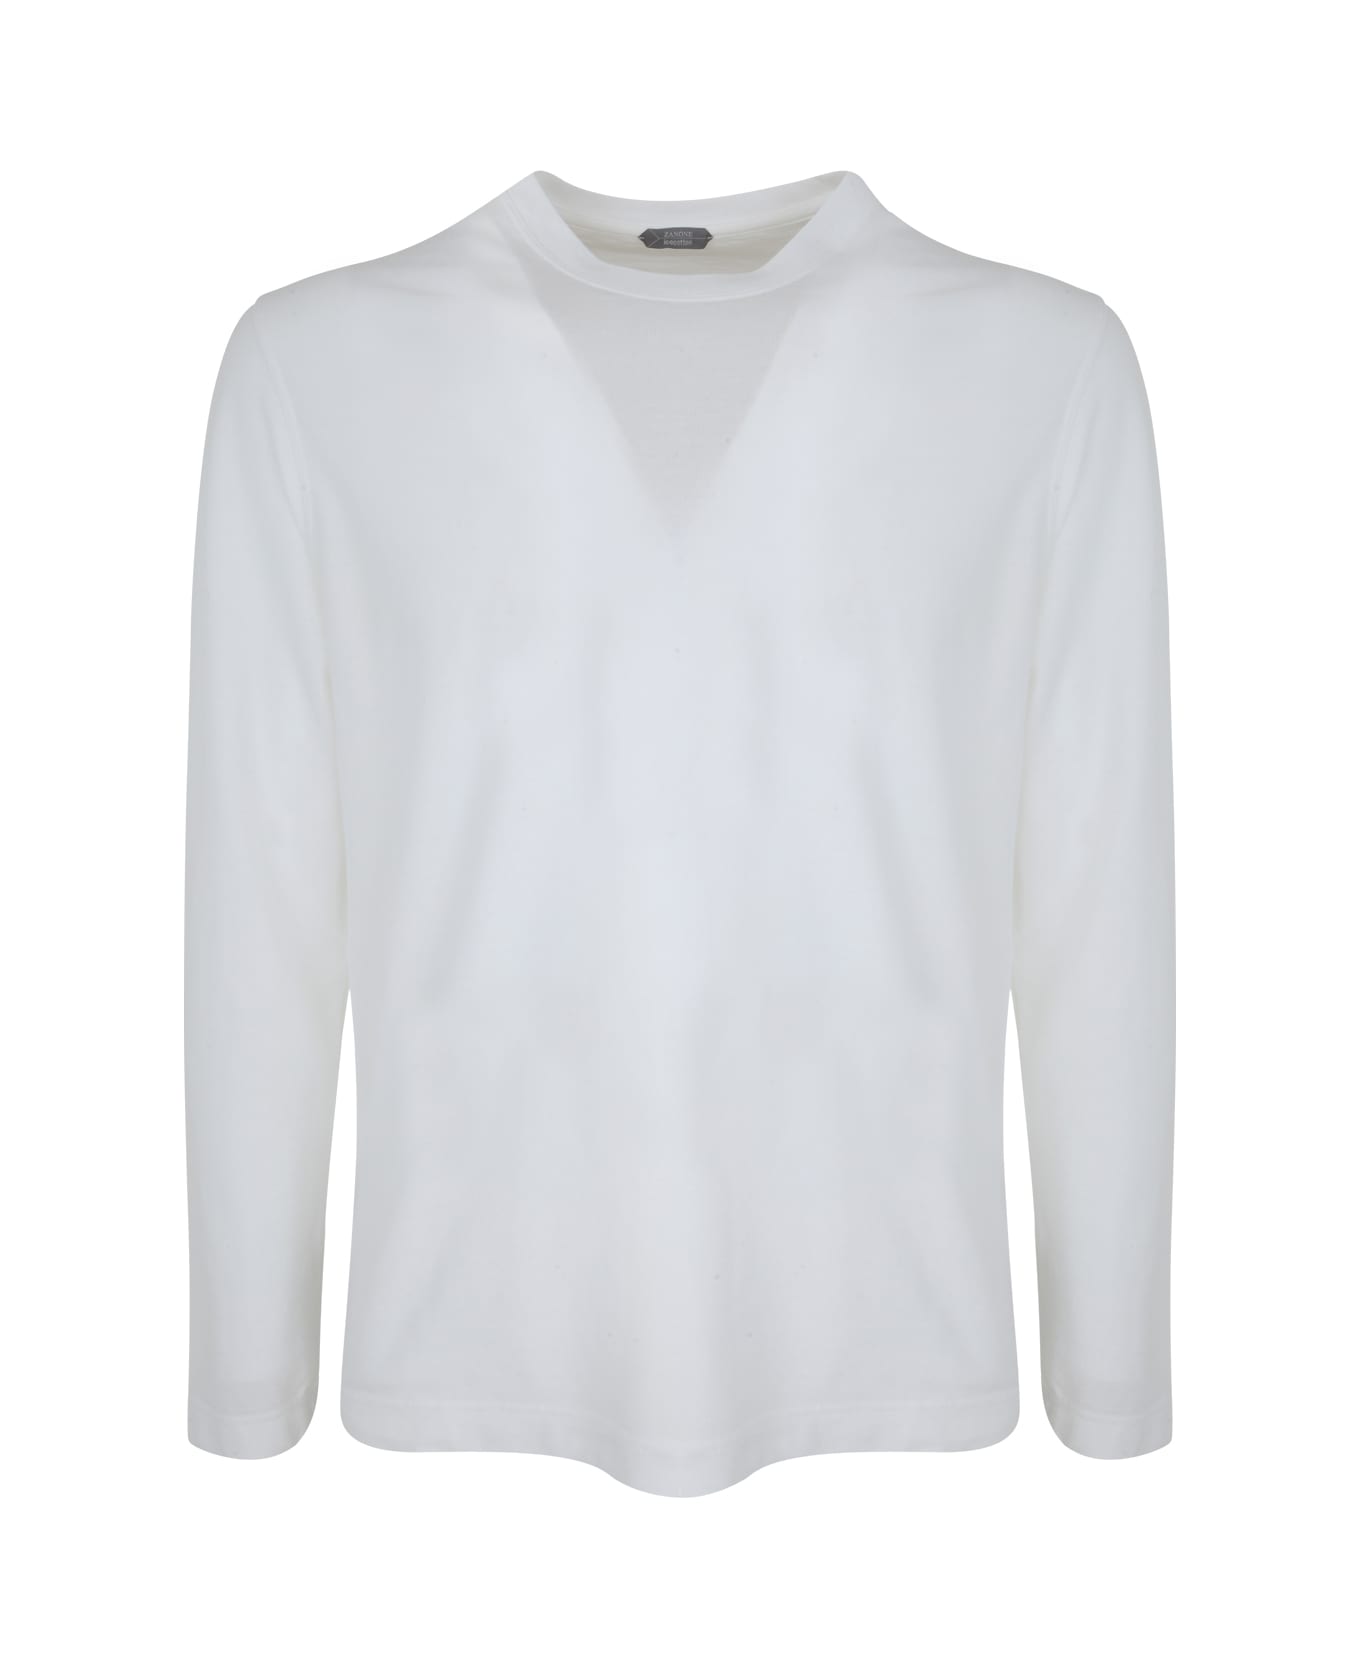 Zanone Long Sleeves T-shirt - White